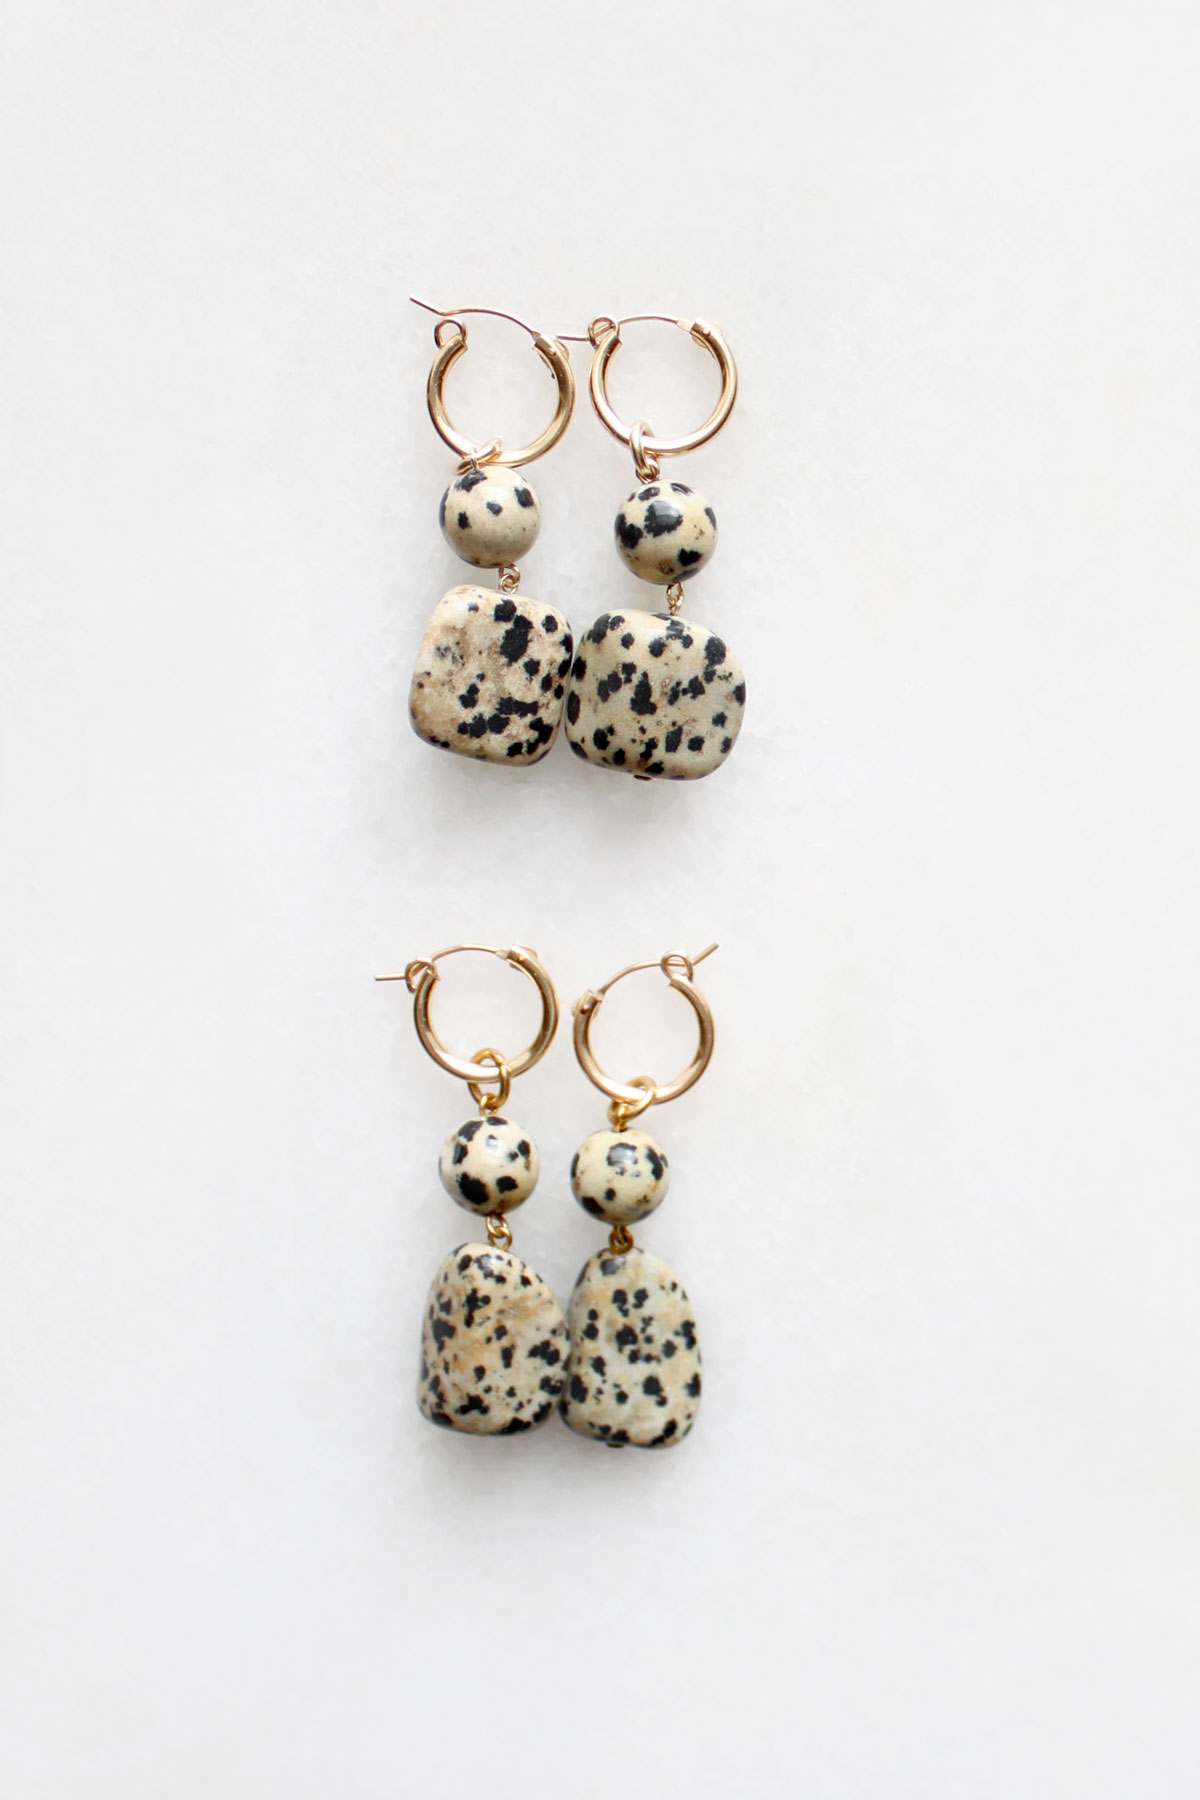 Dalmatian Stone Hoop Earrings by The Vamoose